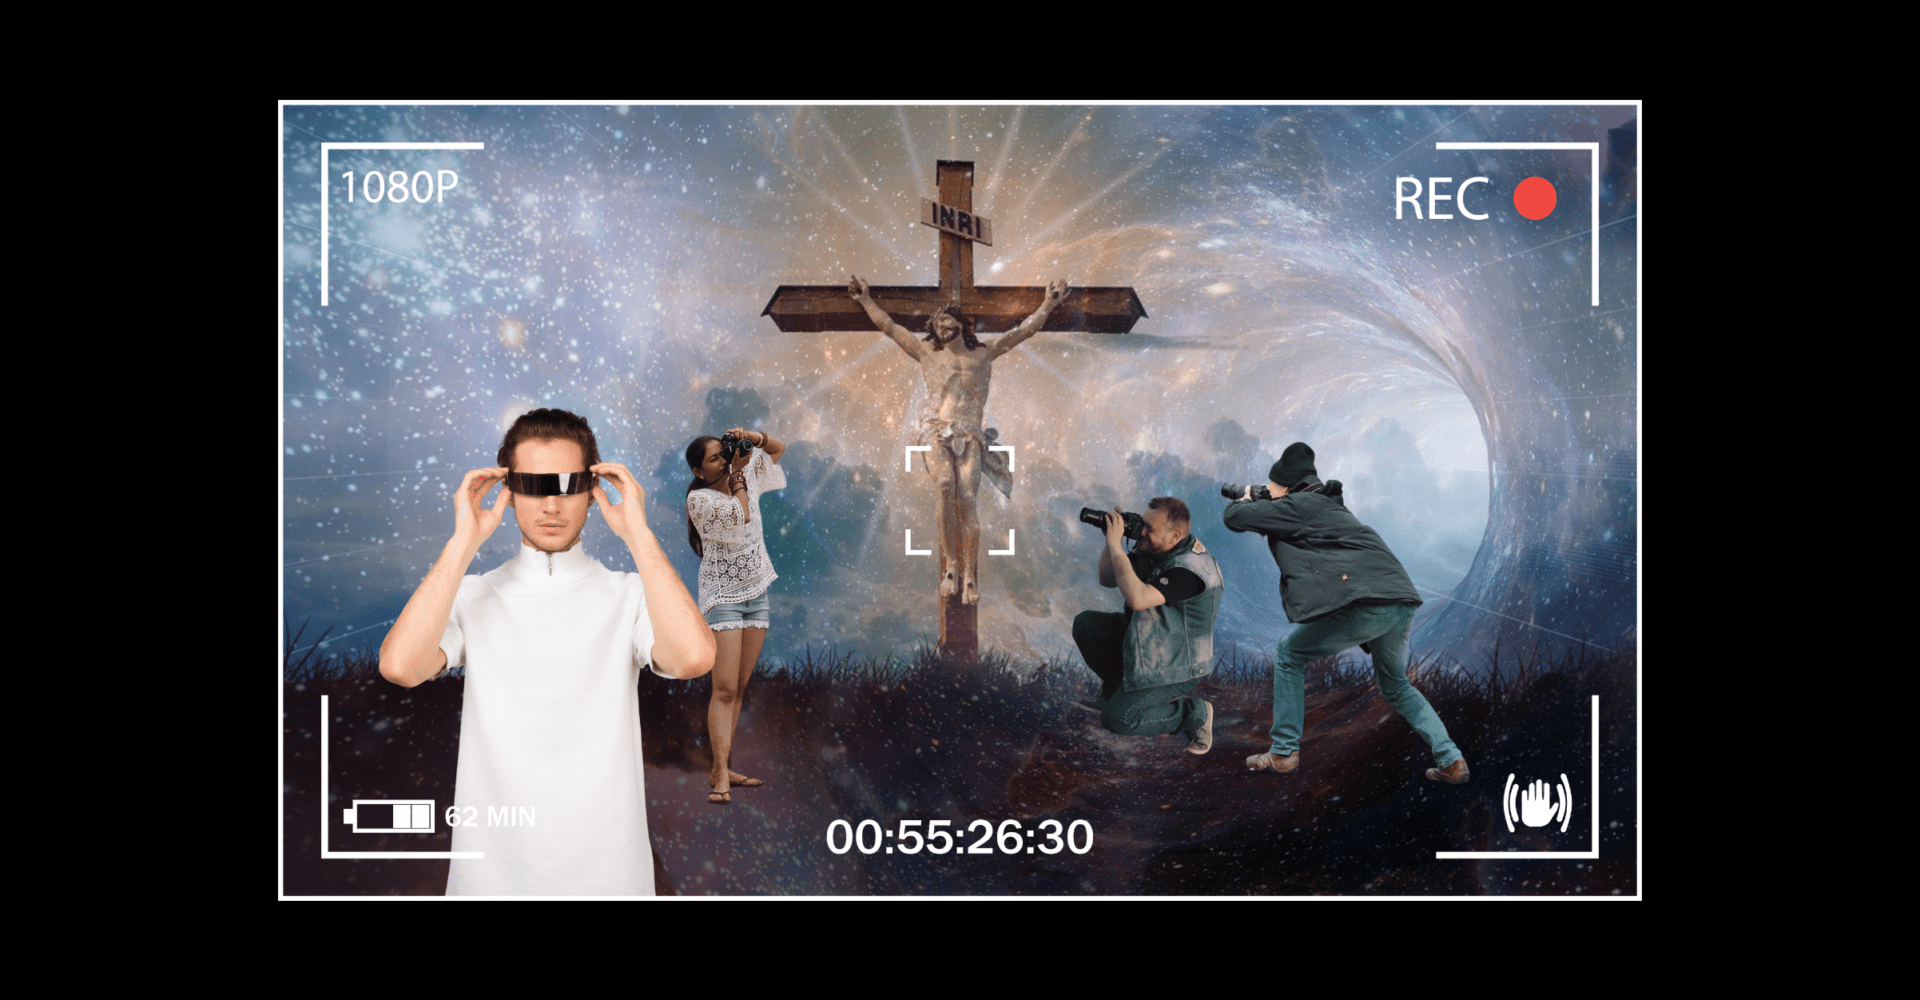 Jezus na krzyżu, paparazzi i mężczyzna w białej bluzce i okularach przeciwsłonecznych